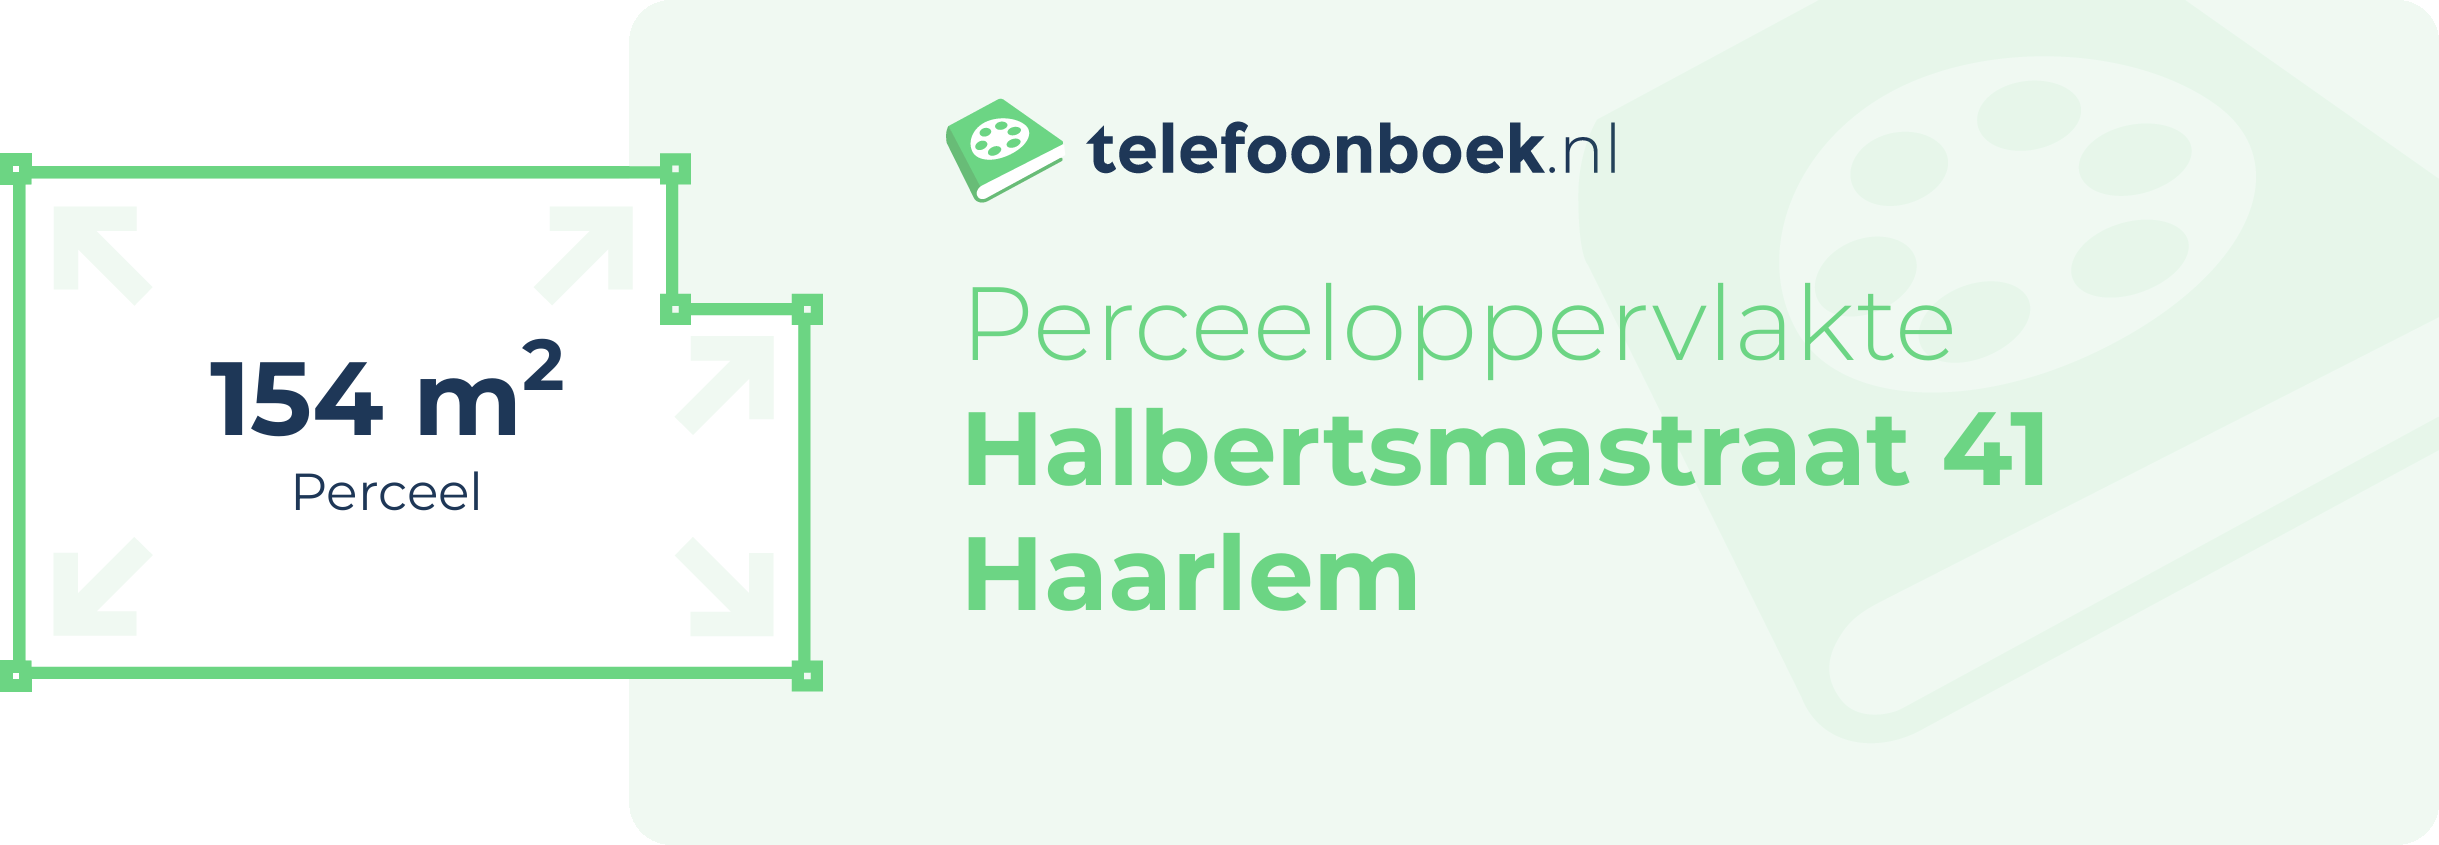 Perceeloppervlakte Halbertsmastraat 41 Haarlem